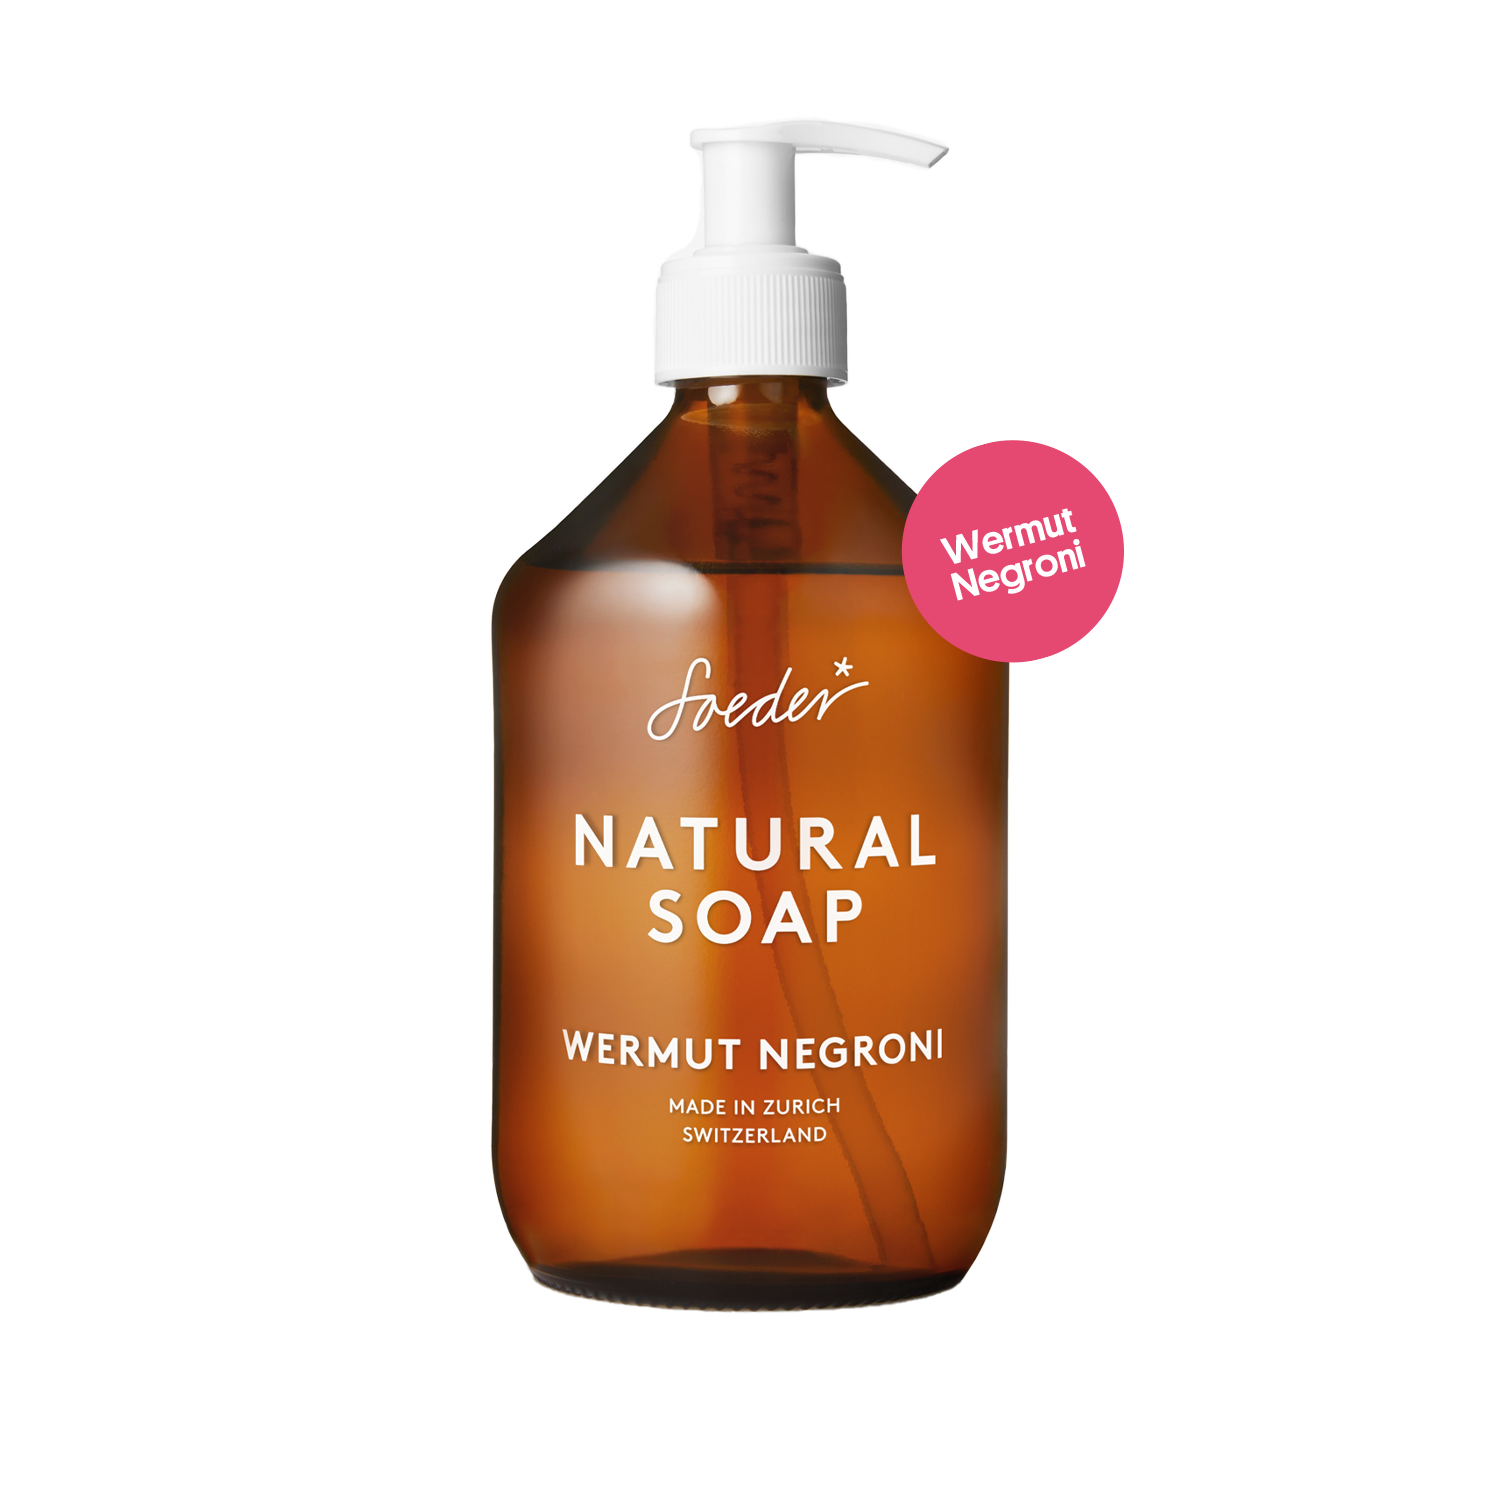 Natural Soap - Wermut Negroni 500 ml von soeder*